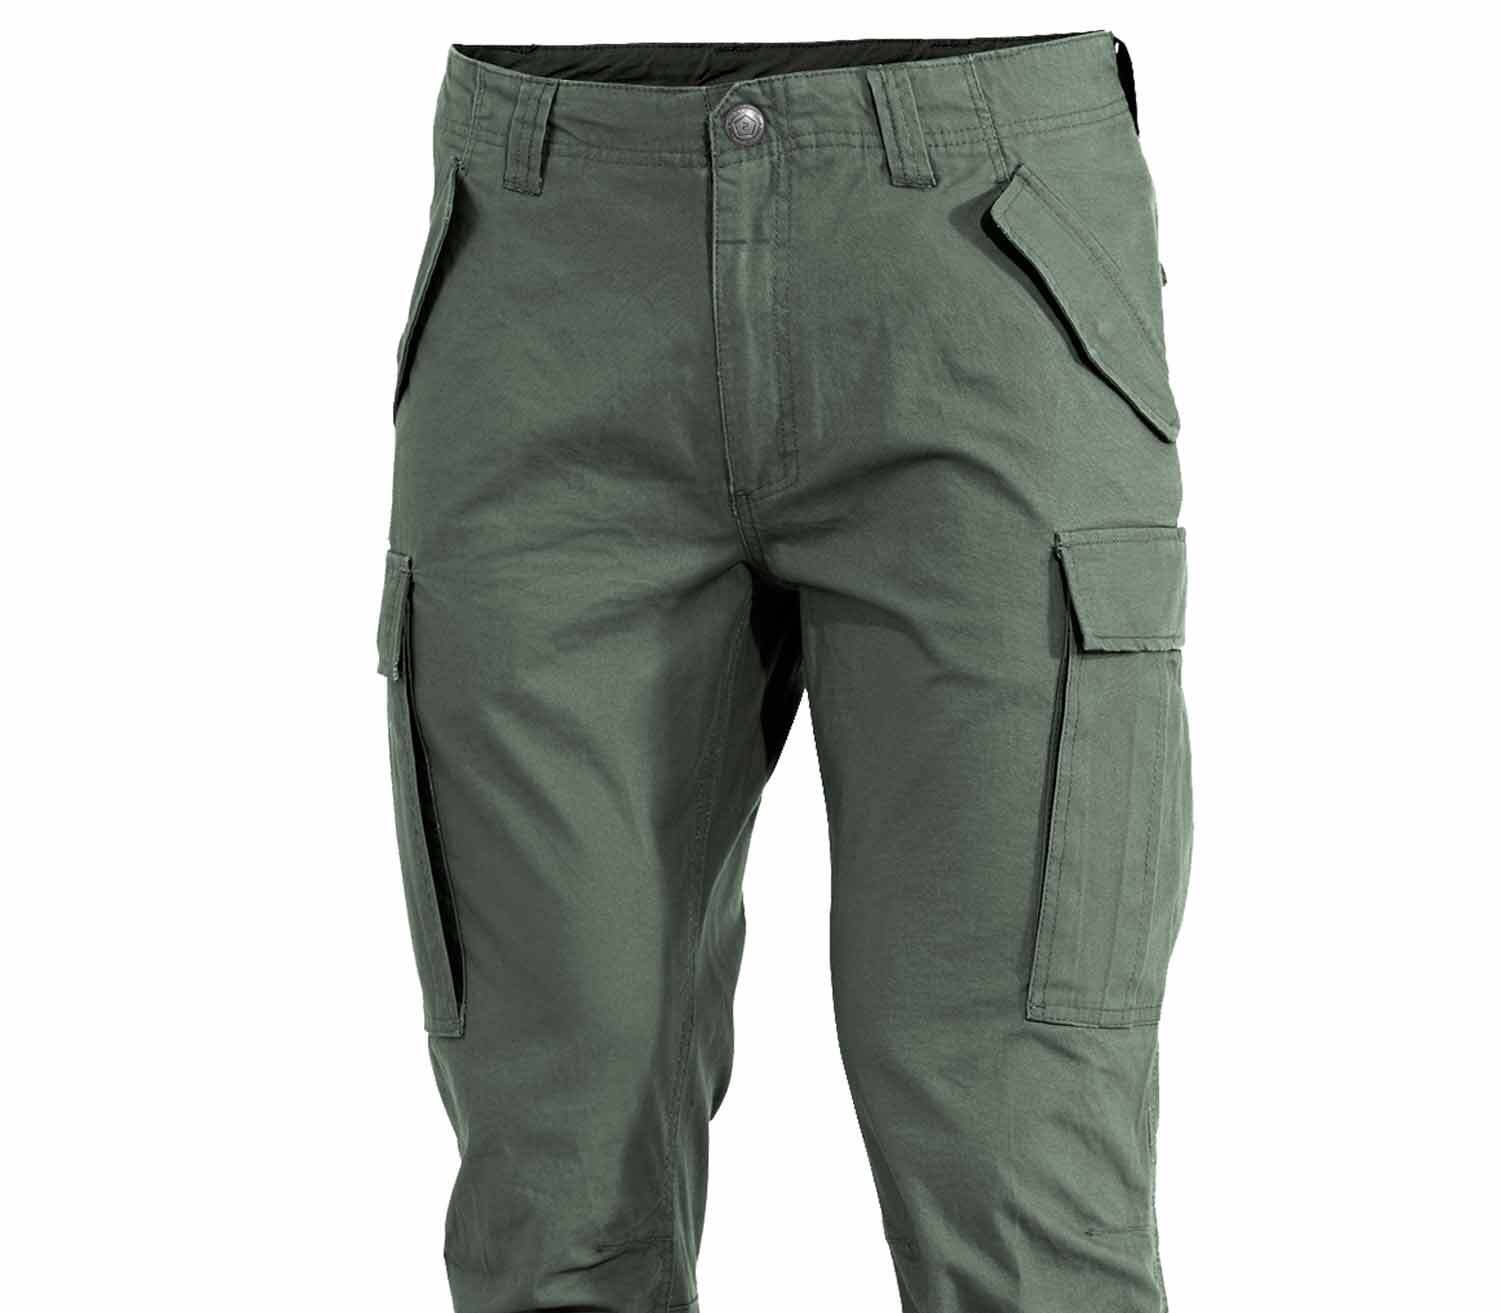 Pantalones Pentagon M65 2.0 superior